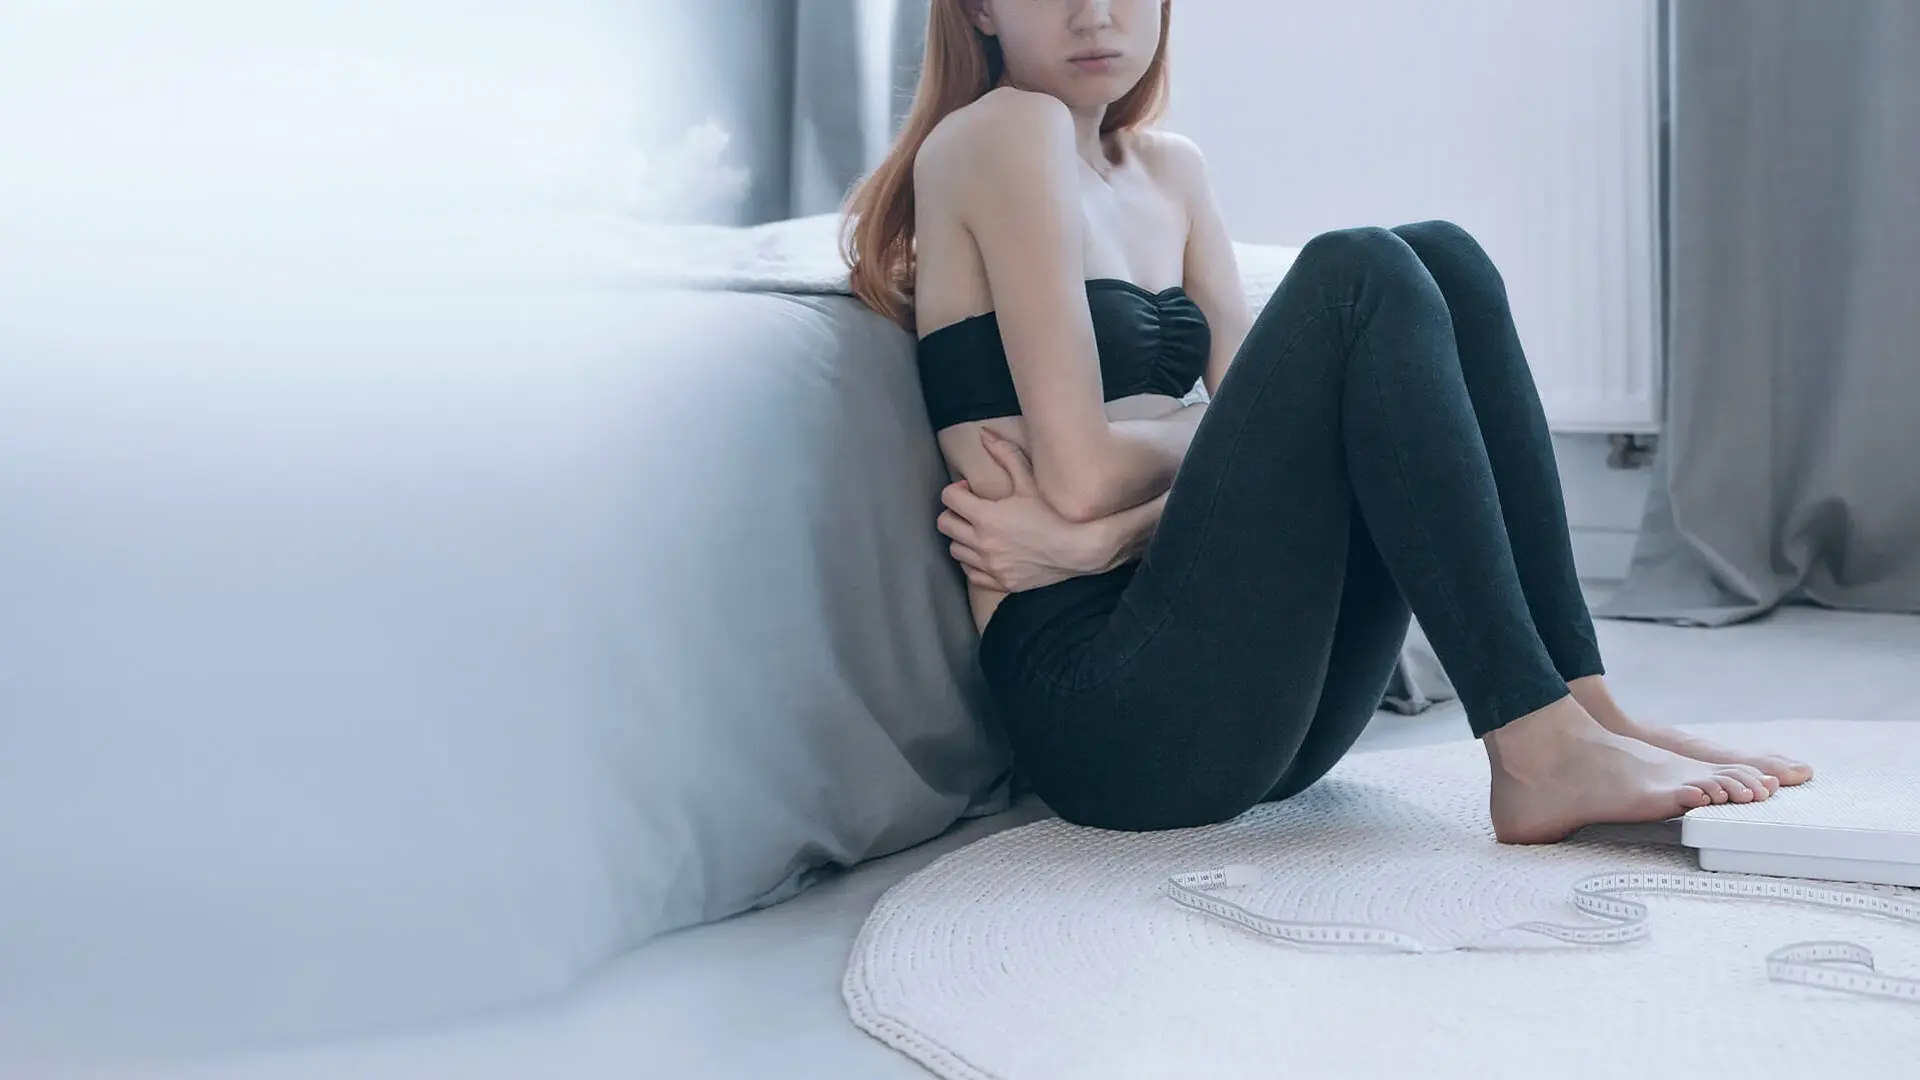 Das Symbolbild zeigt ein sehr schlankes Mädchen. Es sitzt vor dem Bett am Fußboden und hält sich den Bauch. 